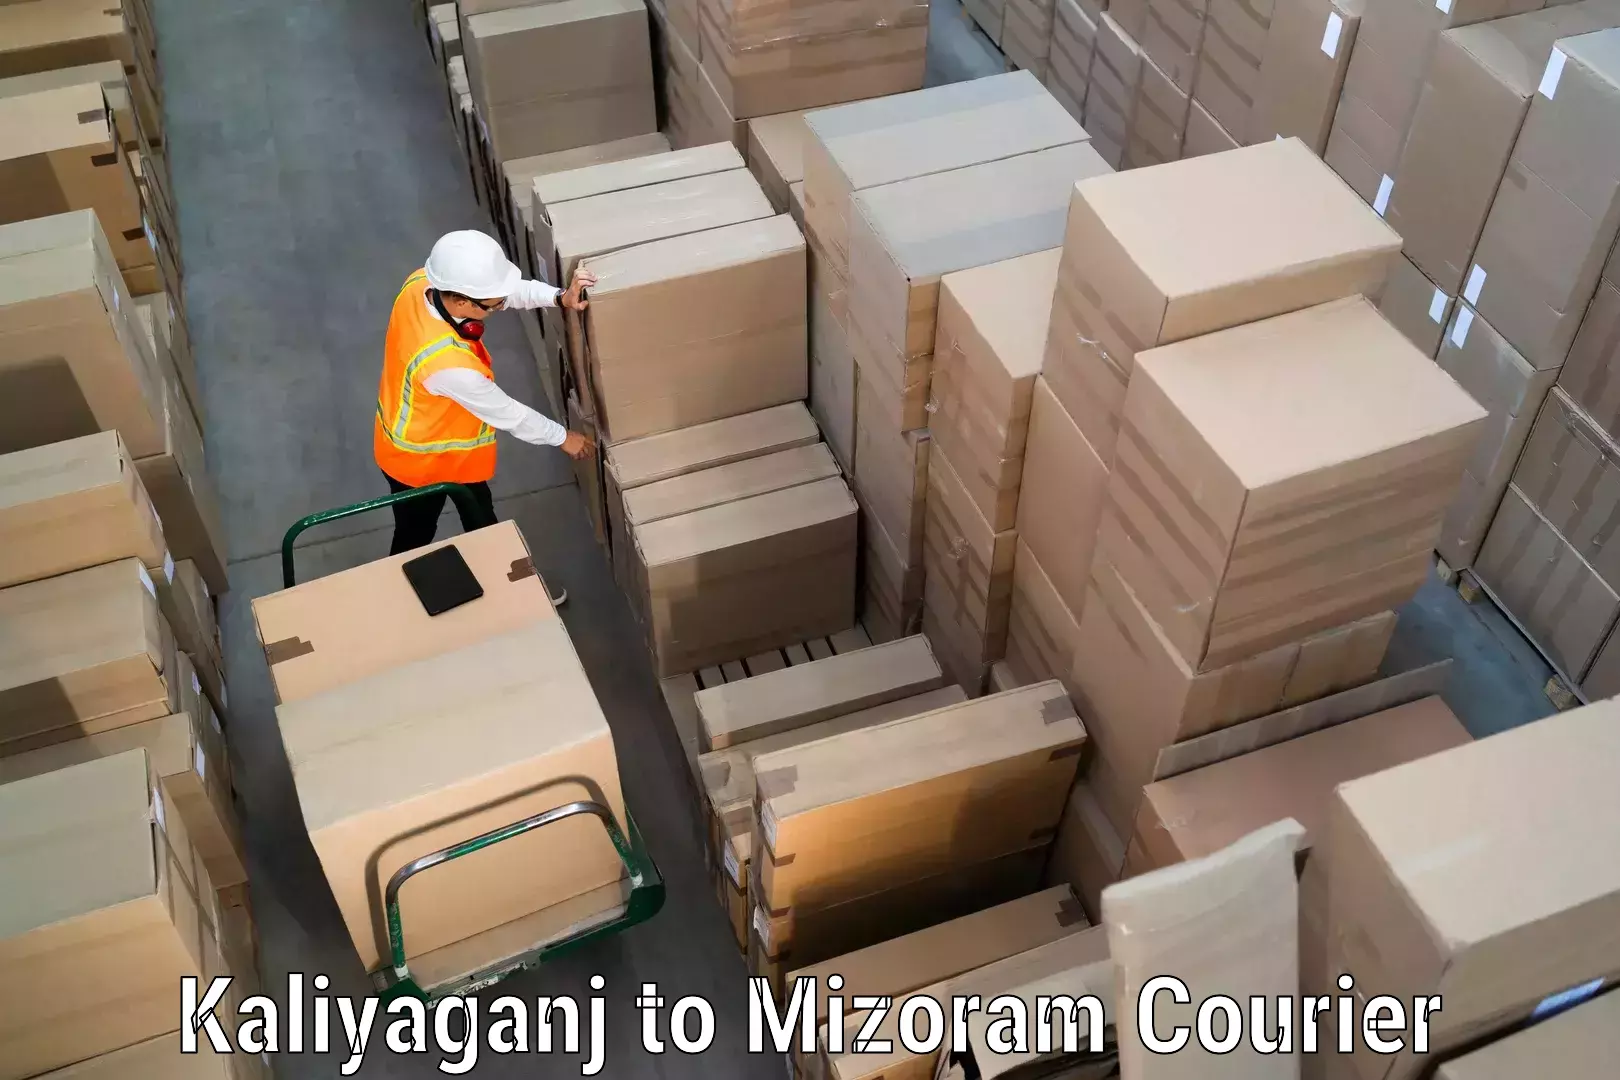 Professional courier handling Kaliyaganj to Aizawl